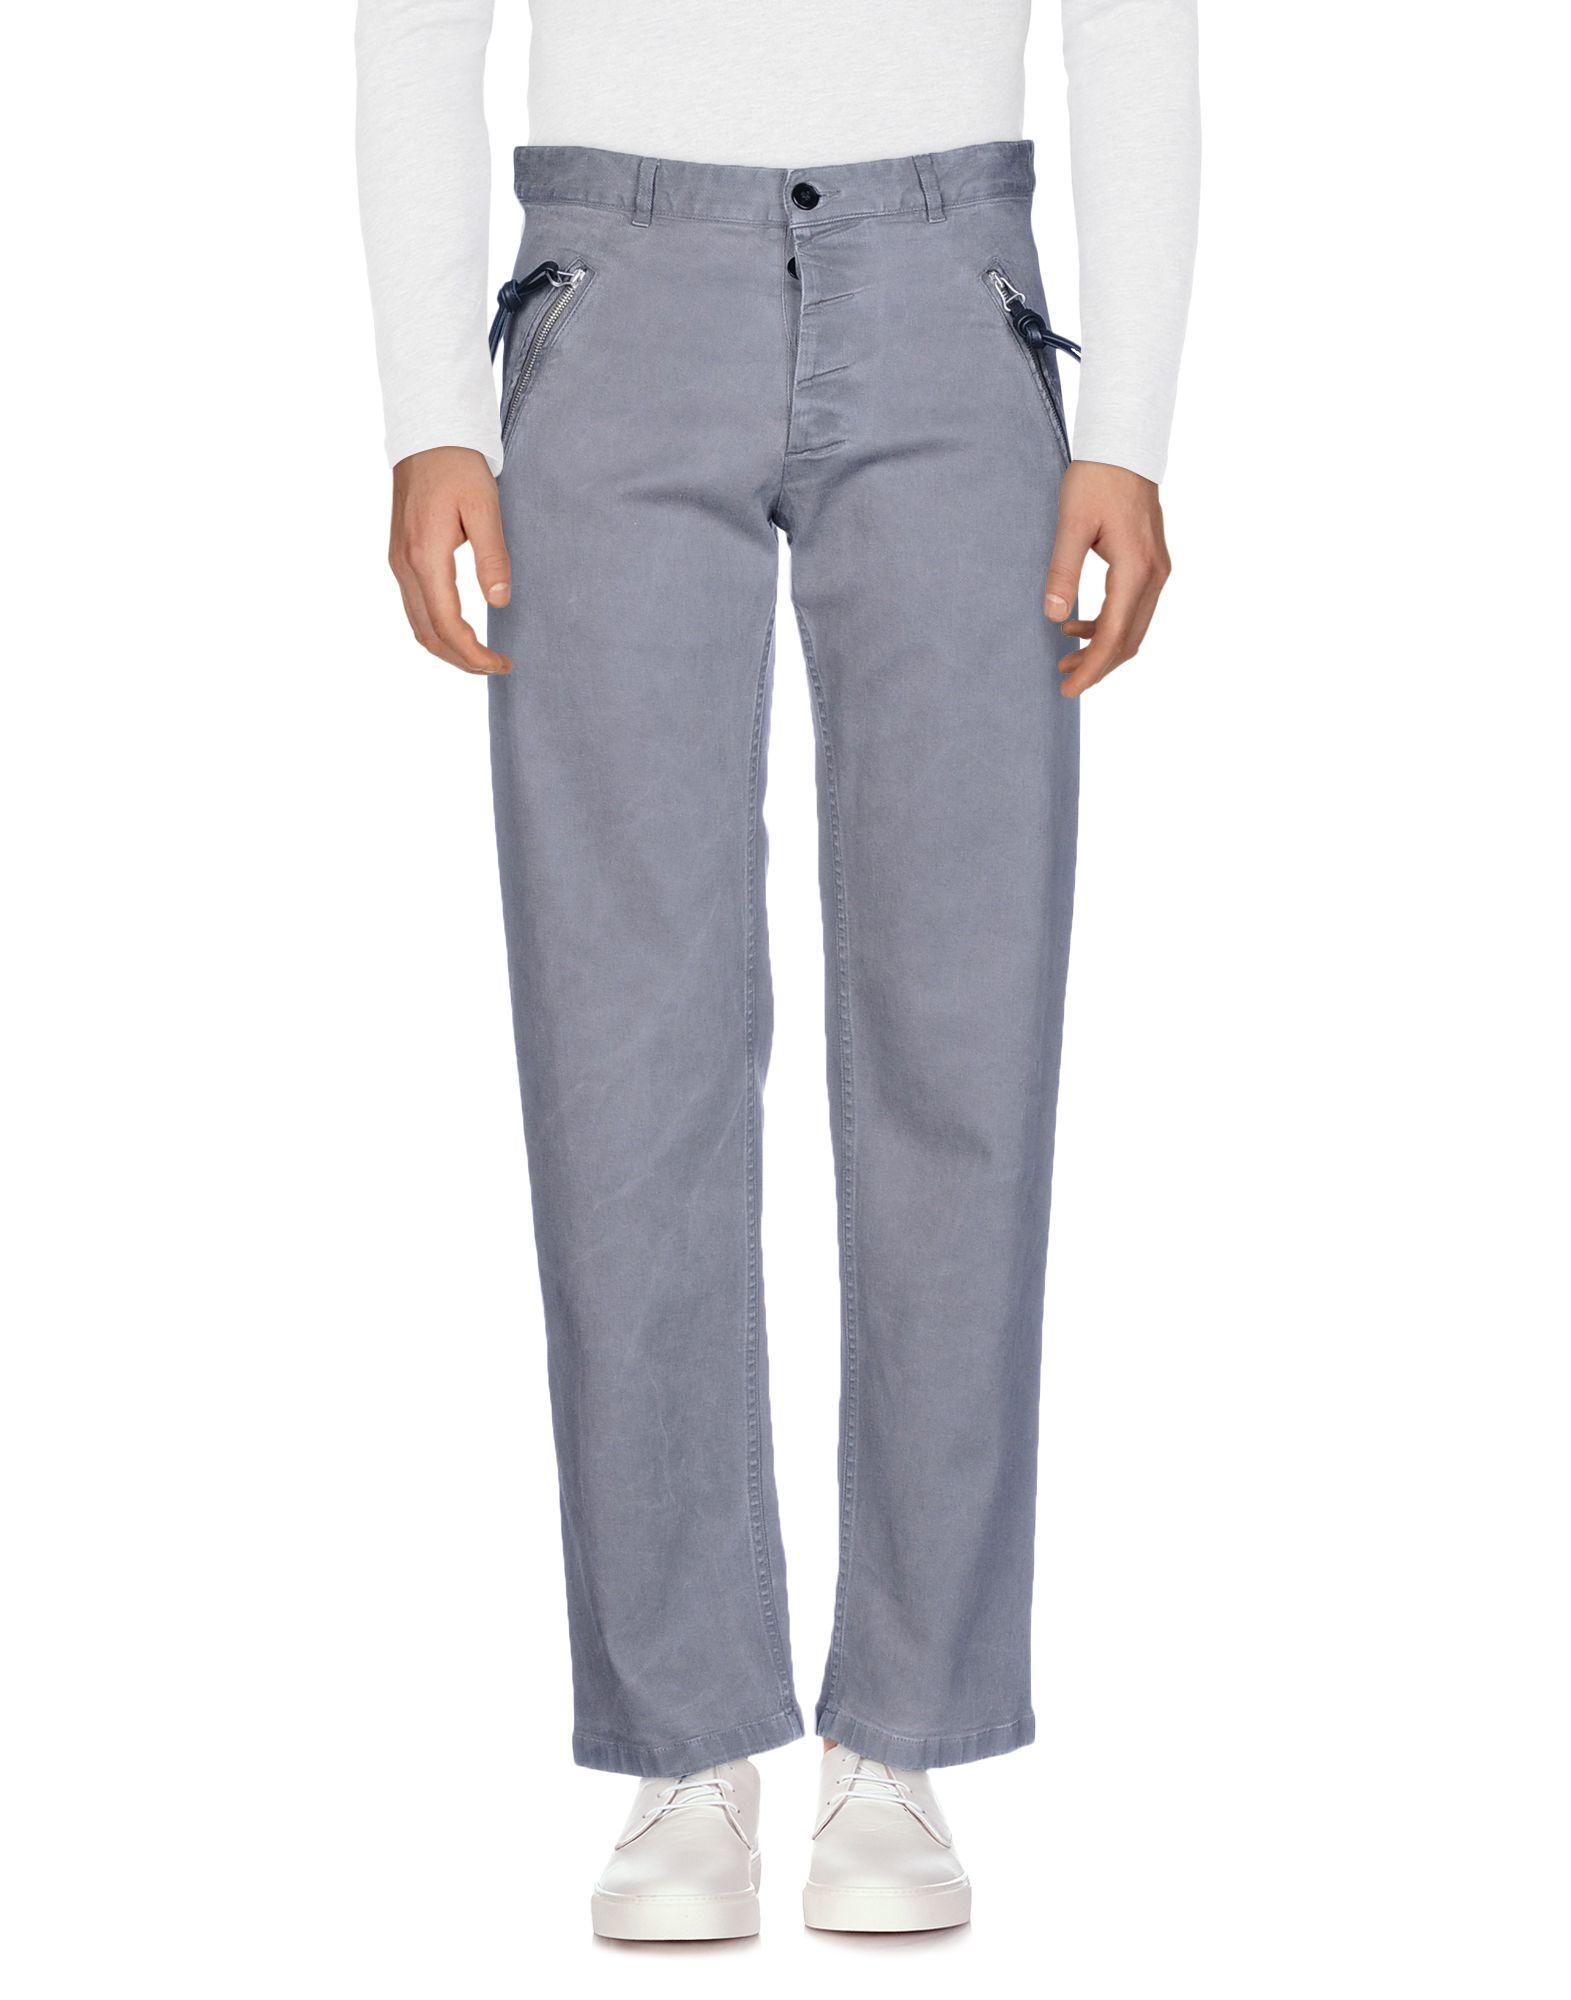 Lyst - Maison Margiela Denim Pants in Gray for Men